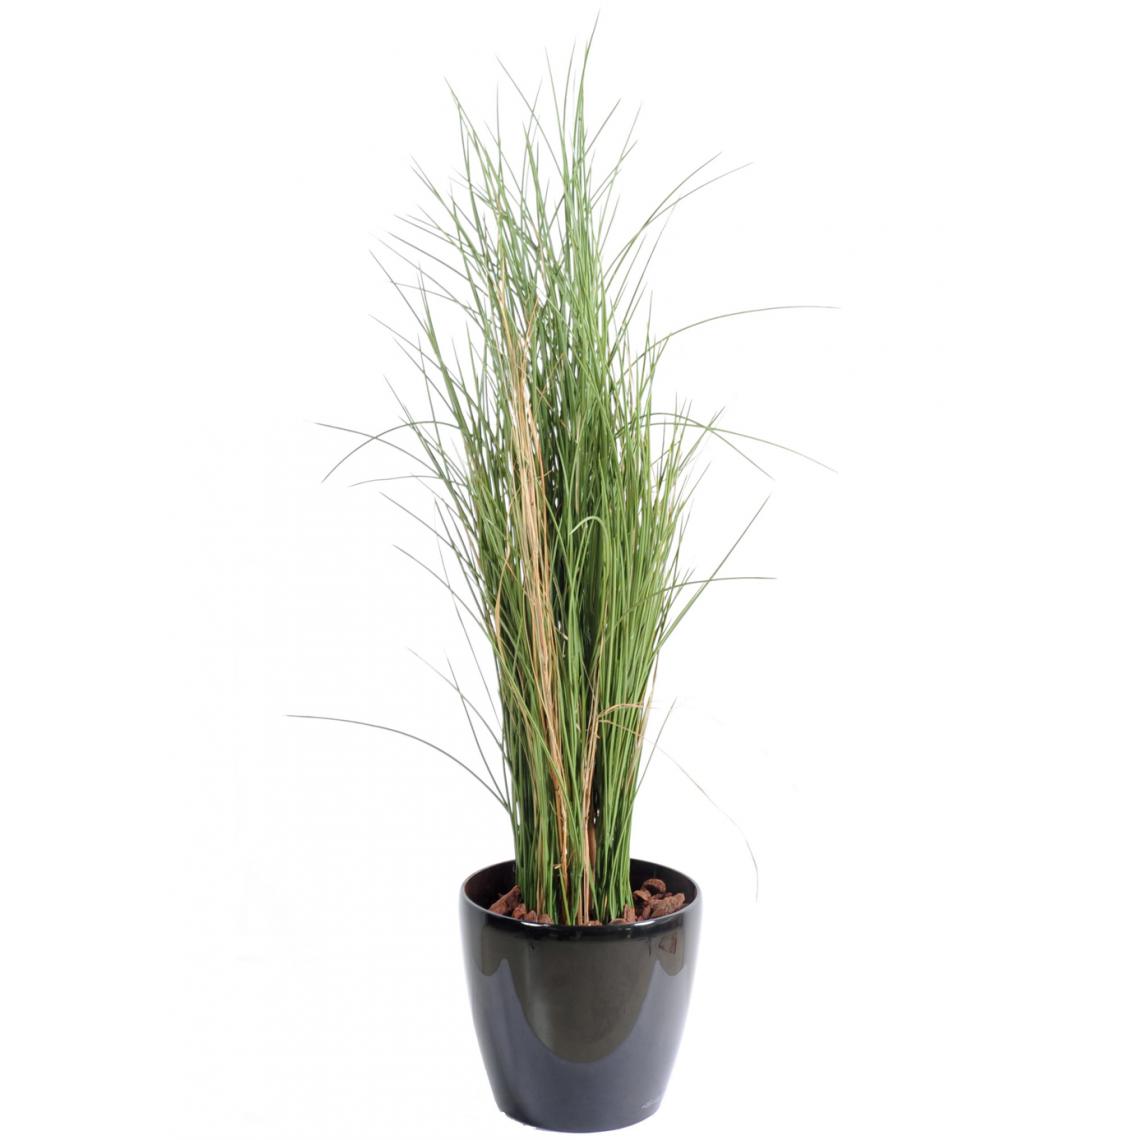 Pegane - Plante artificielle haute gamme Spécial extérieur / Herbe artificielle - Dim : 115 x 40 cm - Plantes et fleurs artificielles